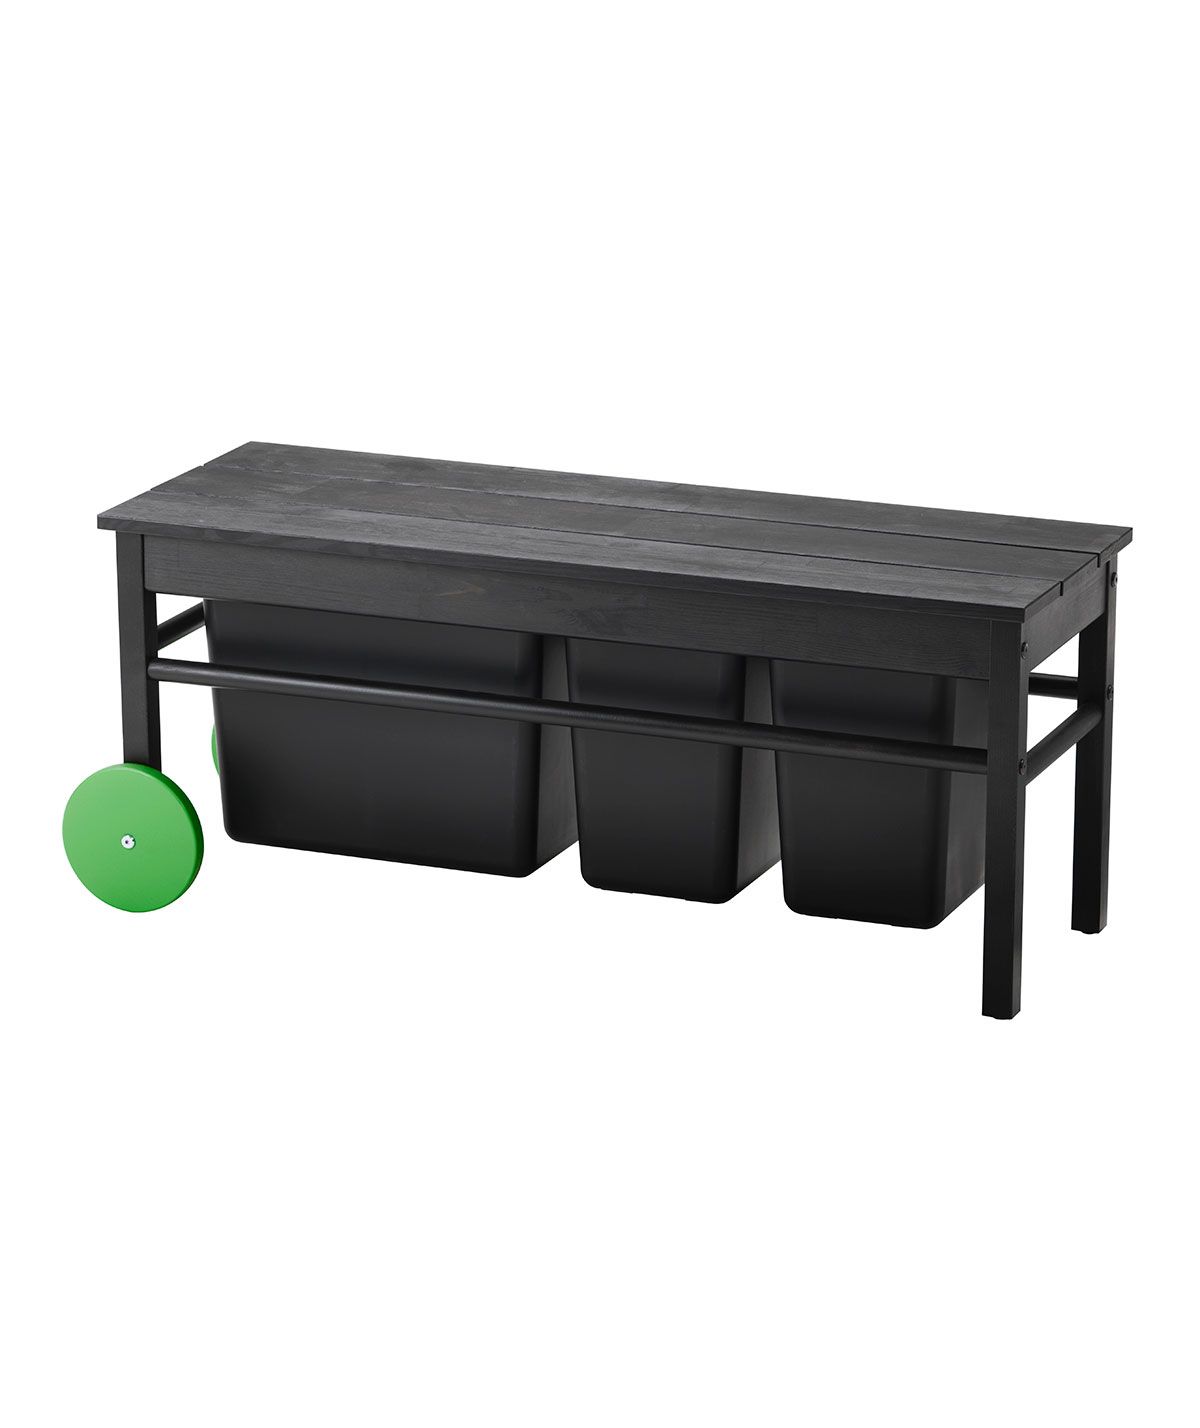 Jetez un coup d'œil à la nouvelle collection (écologique !) d'Ikea